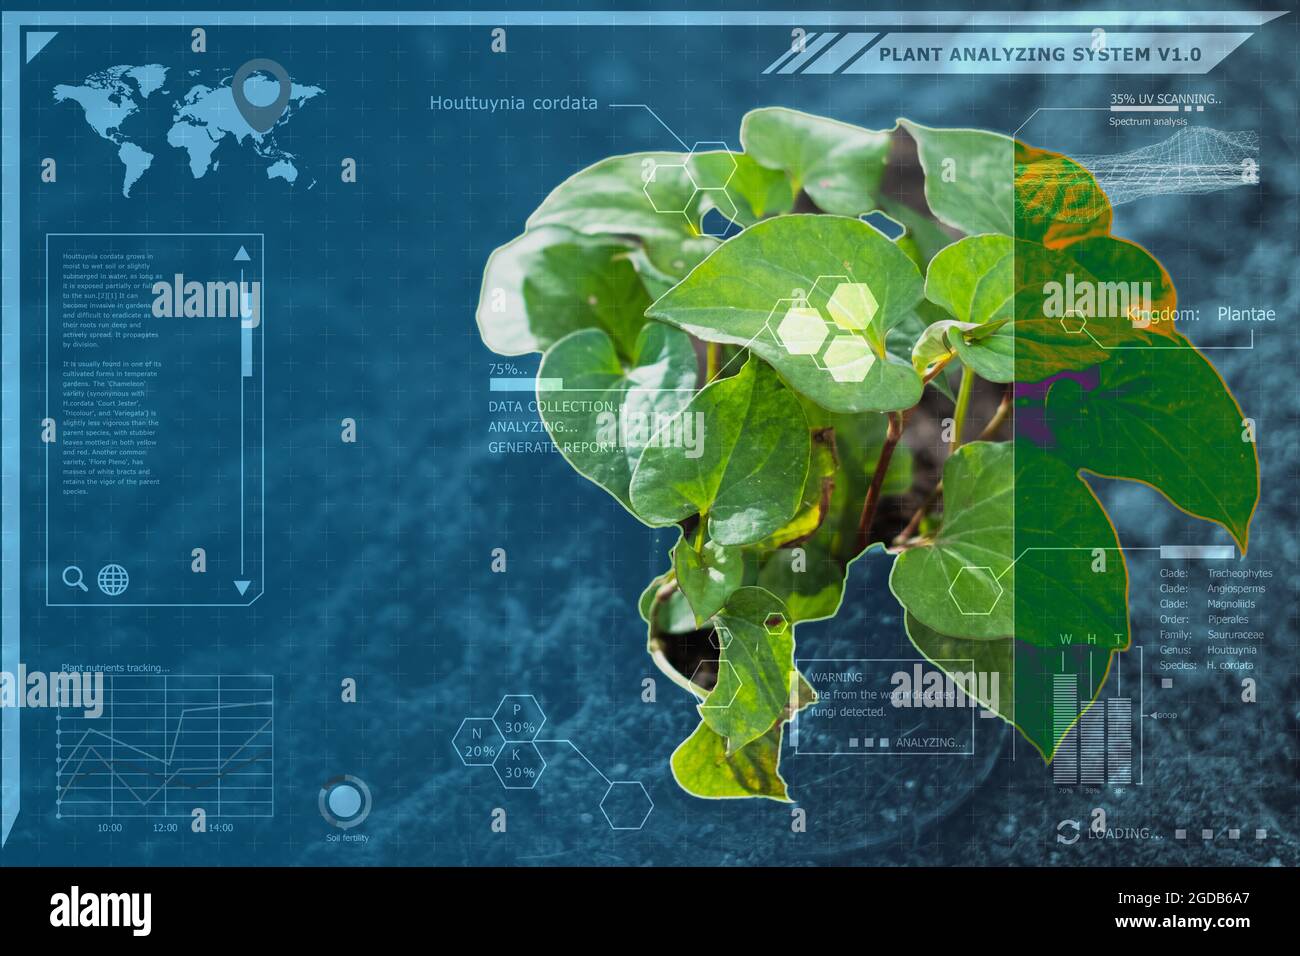 Technologie végétale botanique identifier système informatique, simulation graphique pour la plate-forme d'innovation avancée pour l'agriculture de précision et l'environnement Big DAT Banque D'Images